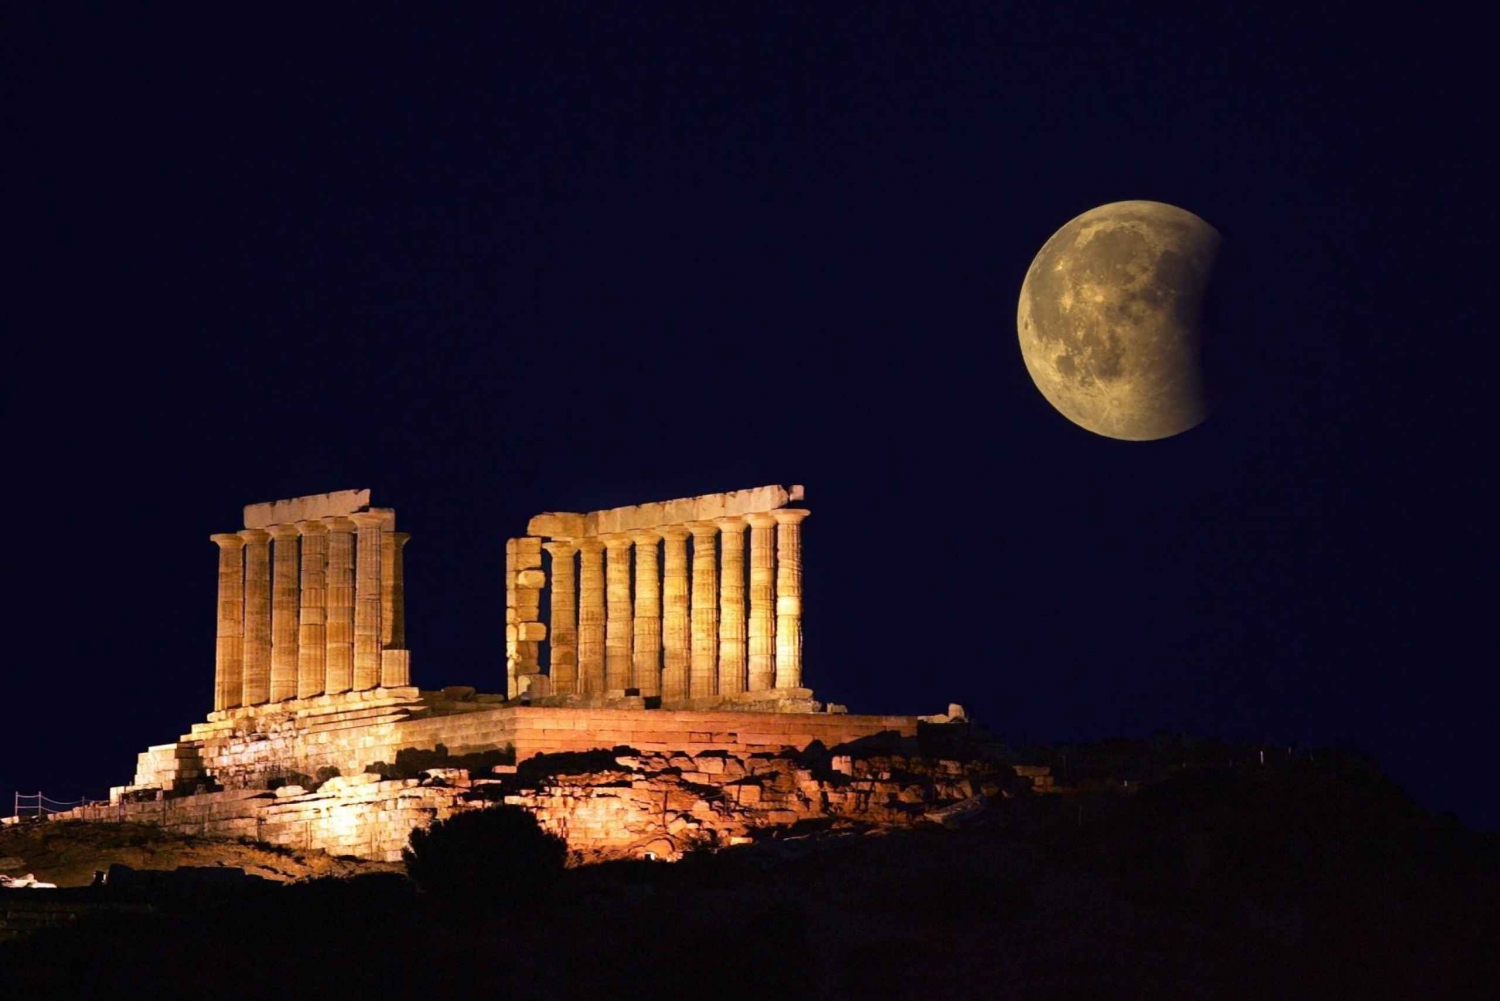 Athene naar Sounio: Ontdek de tempel van Poseidon (4 uur)